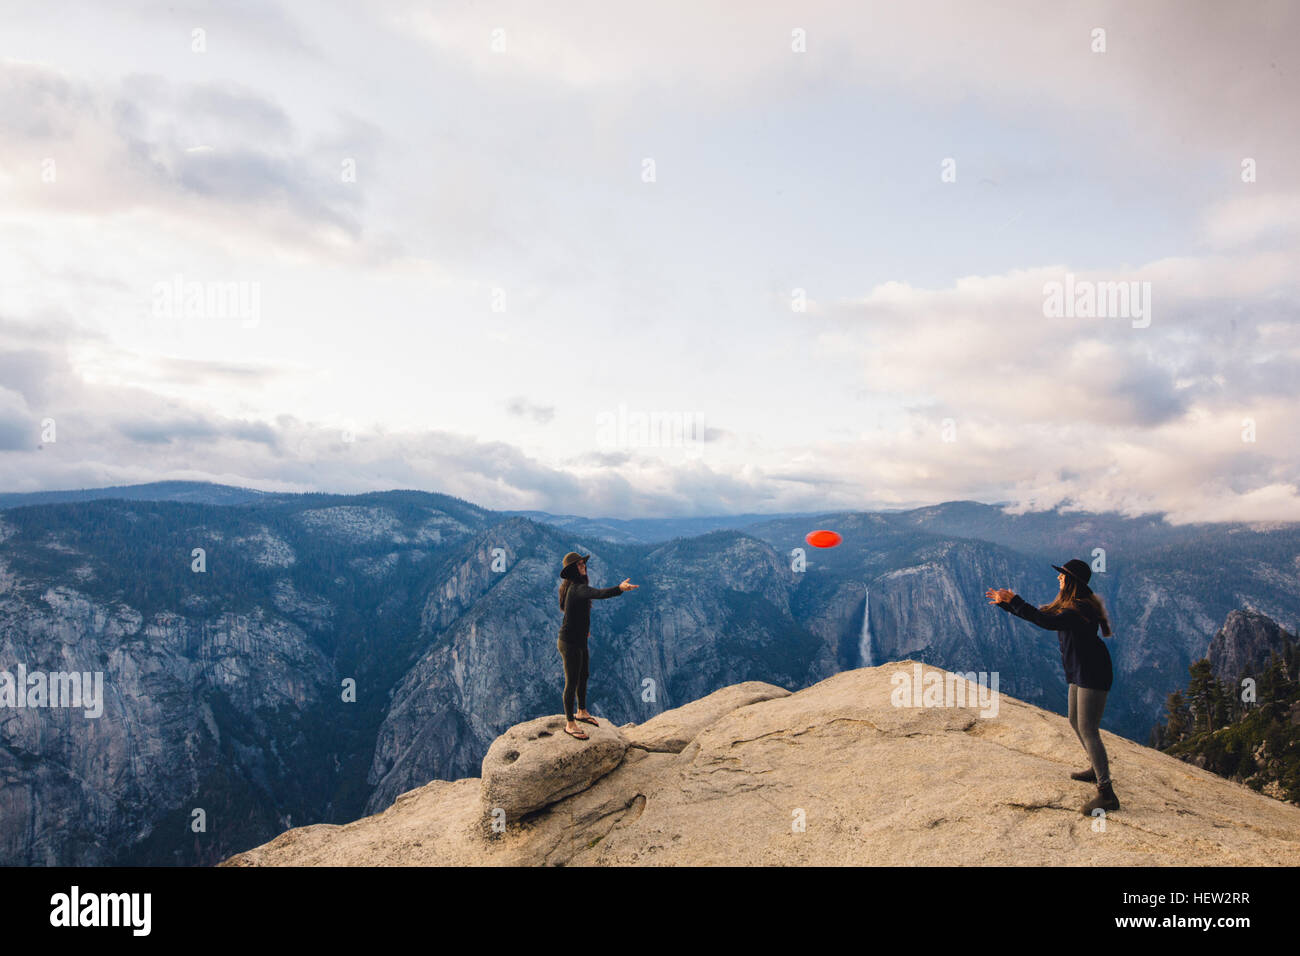 Giovane donna giocando con il flying disc in cima alla montagna che domina il Parco Nazionale di Yosemite in California, Stati Uniti d'America Foto Stock